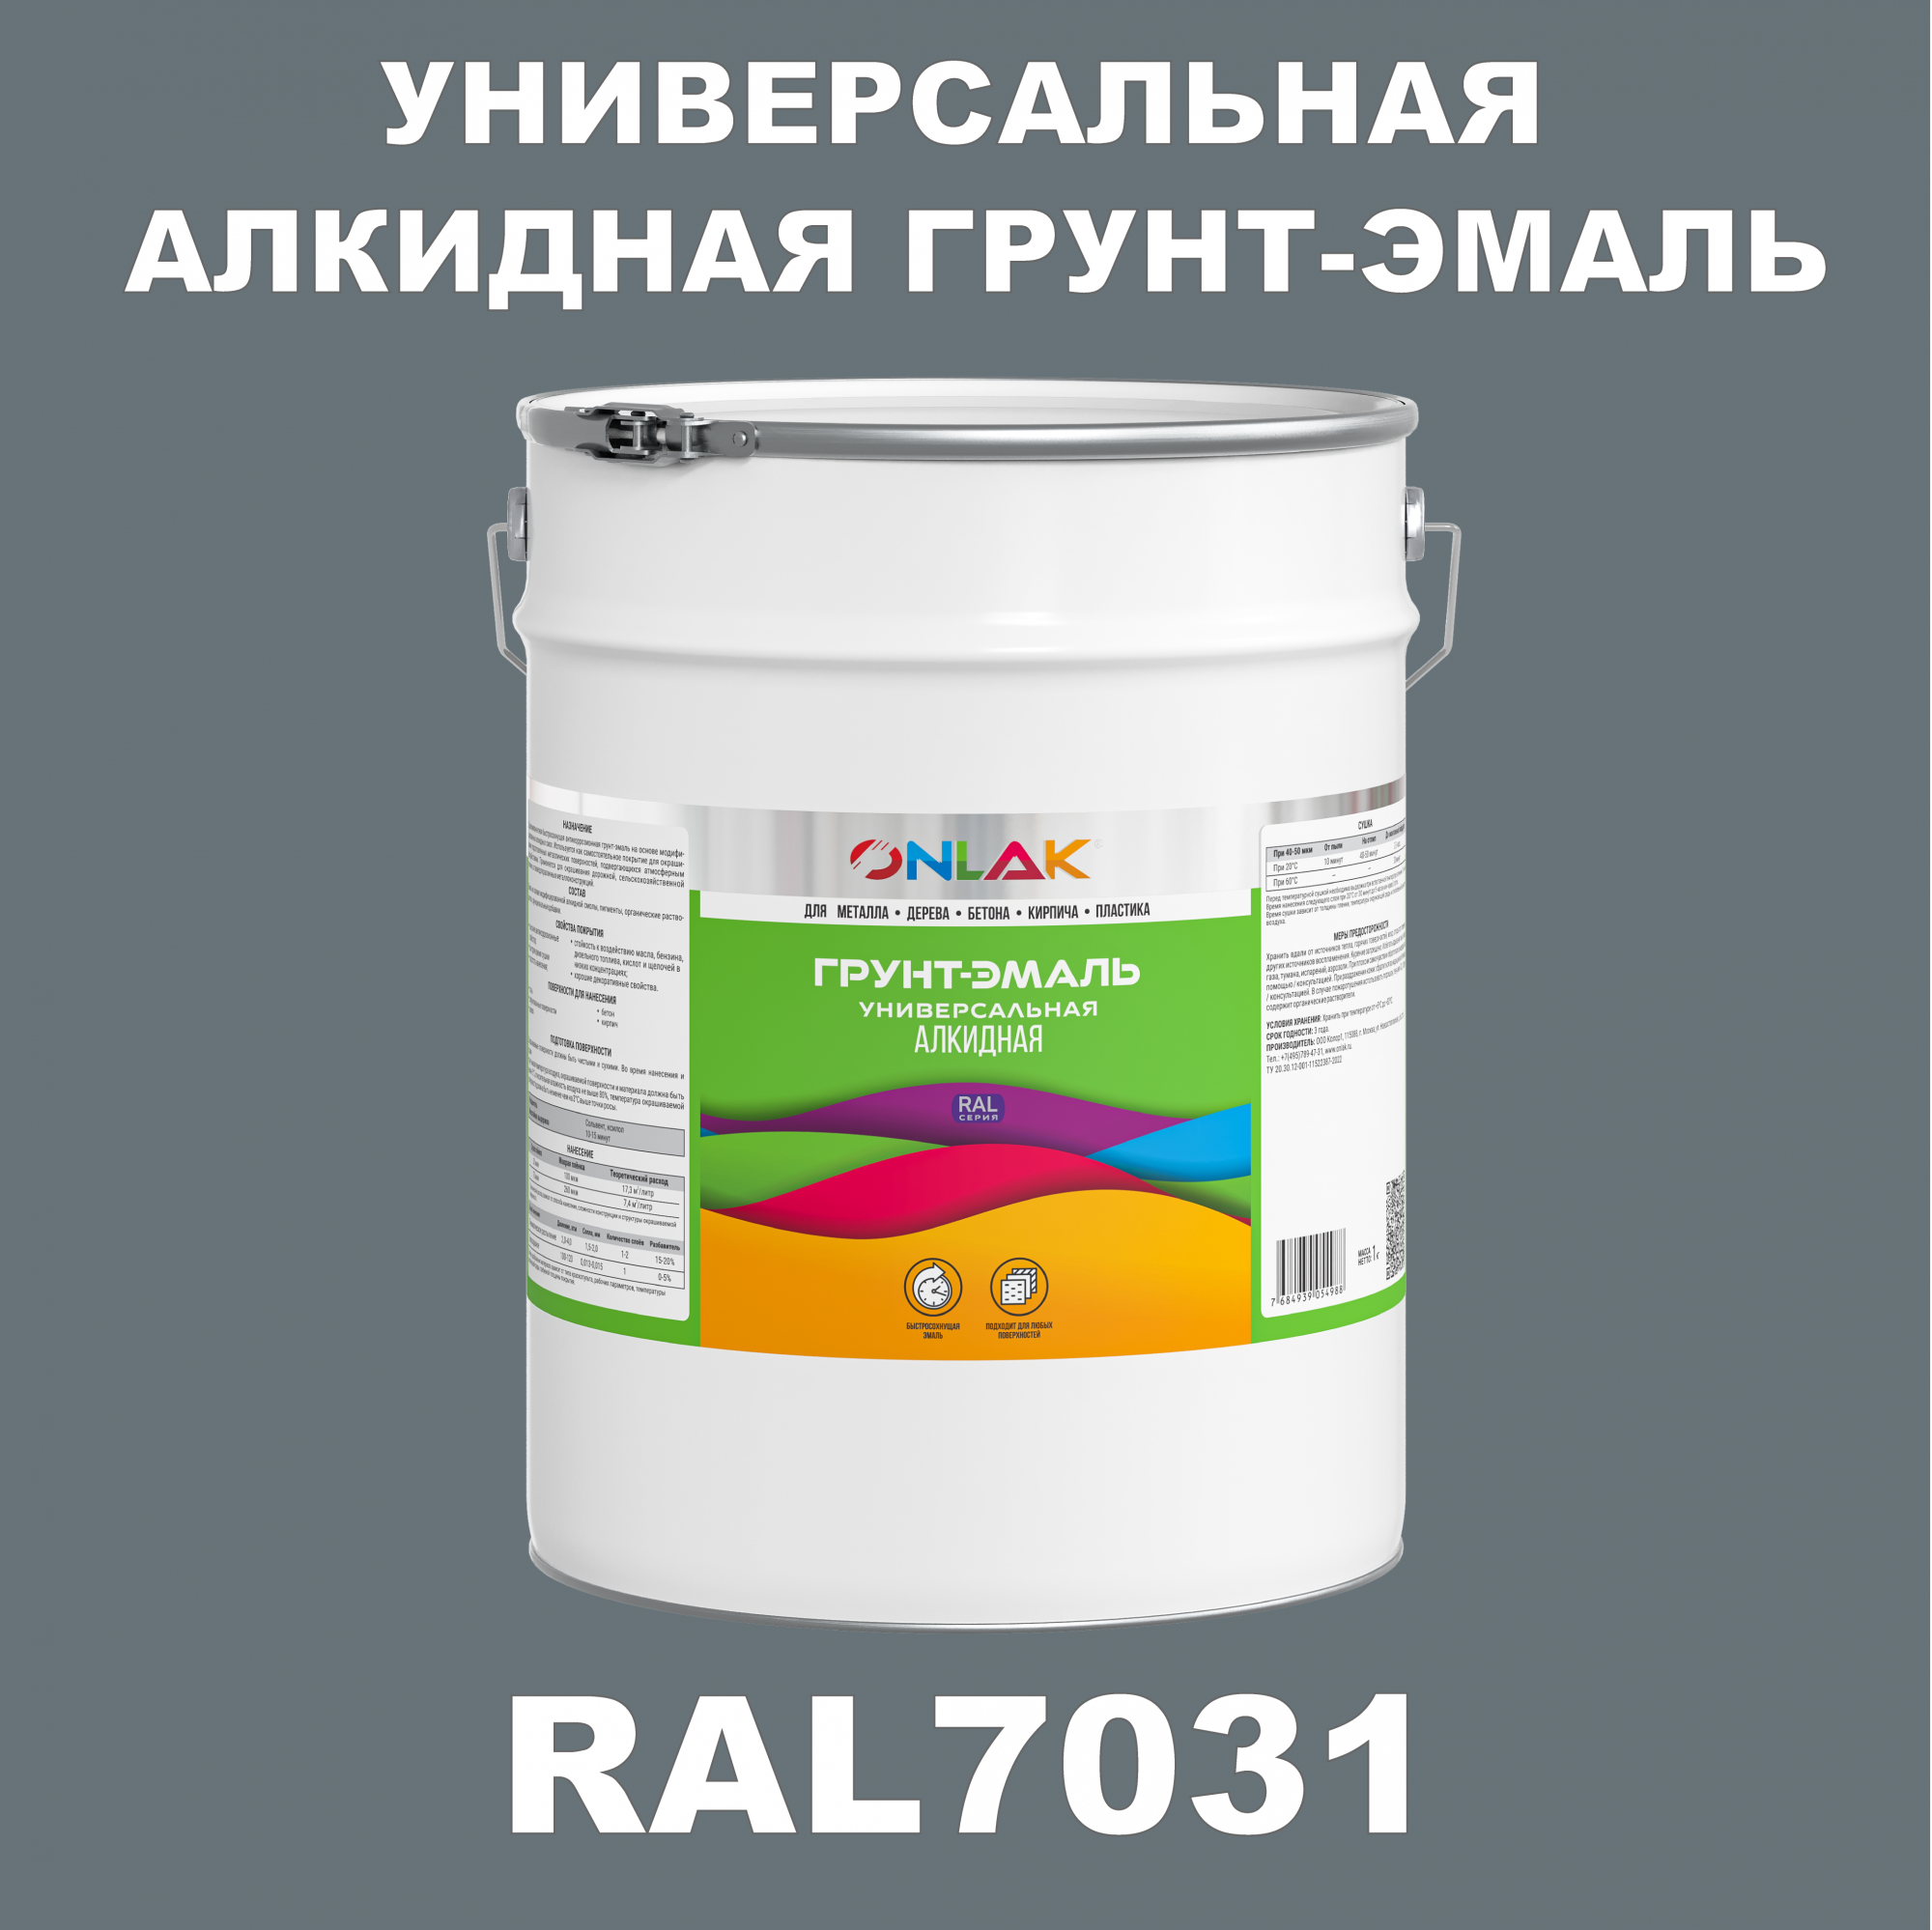 Грунт-эмаль ONLAK 1К RAL7031 антикоррозионная алкидная по металлу по ржавчине 20 кг грунт эмаль престиж по ржавчине алкидная зеленая 1 9 кг